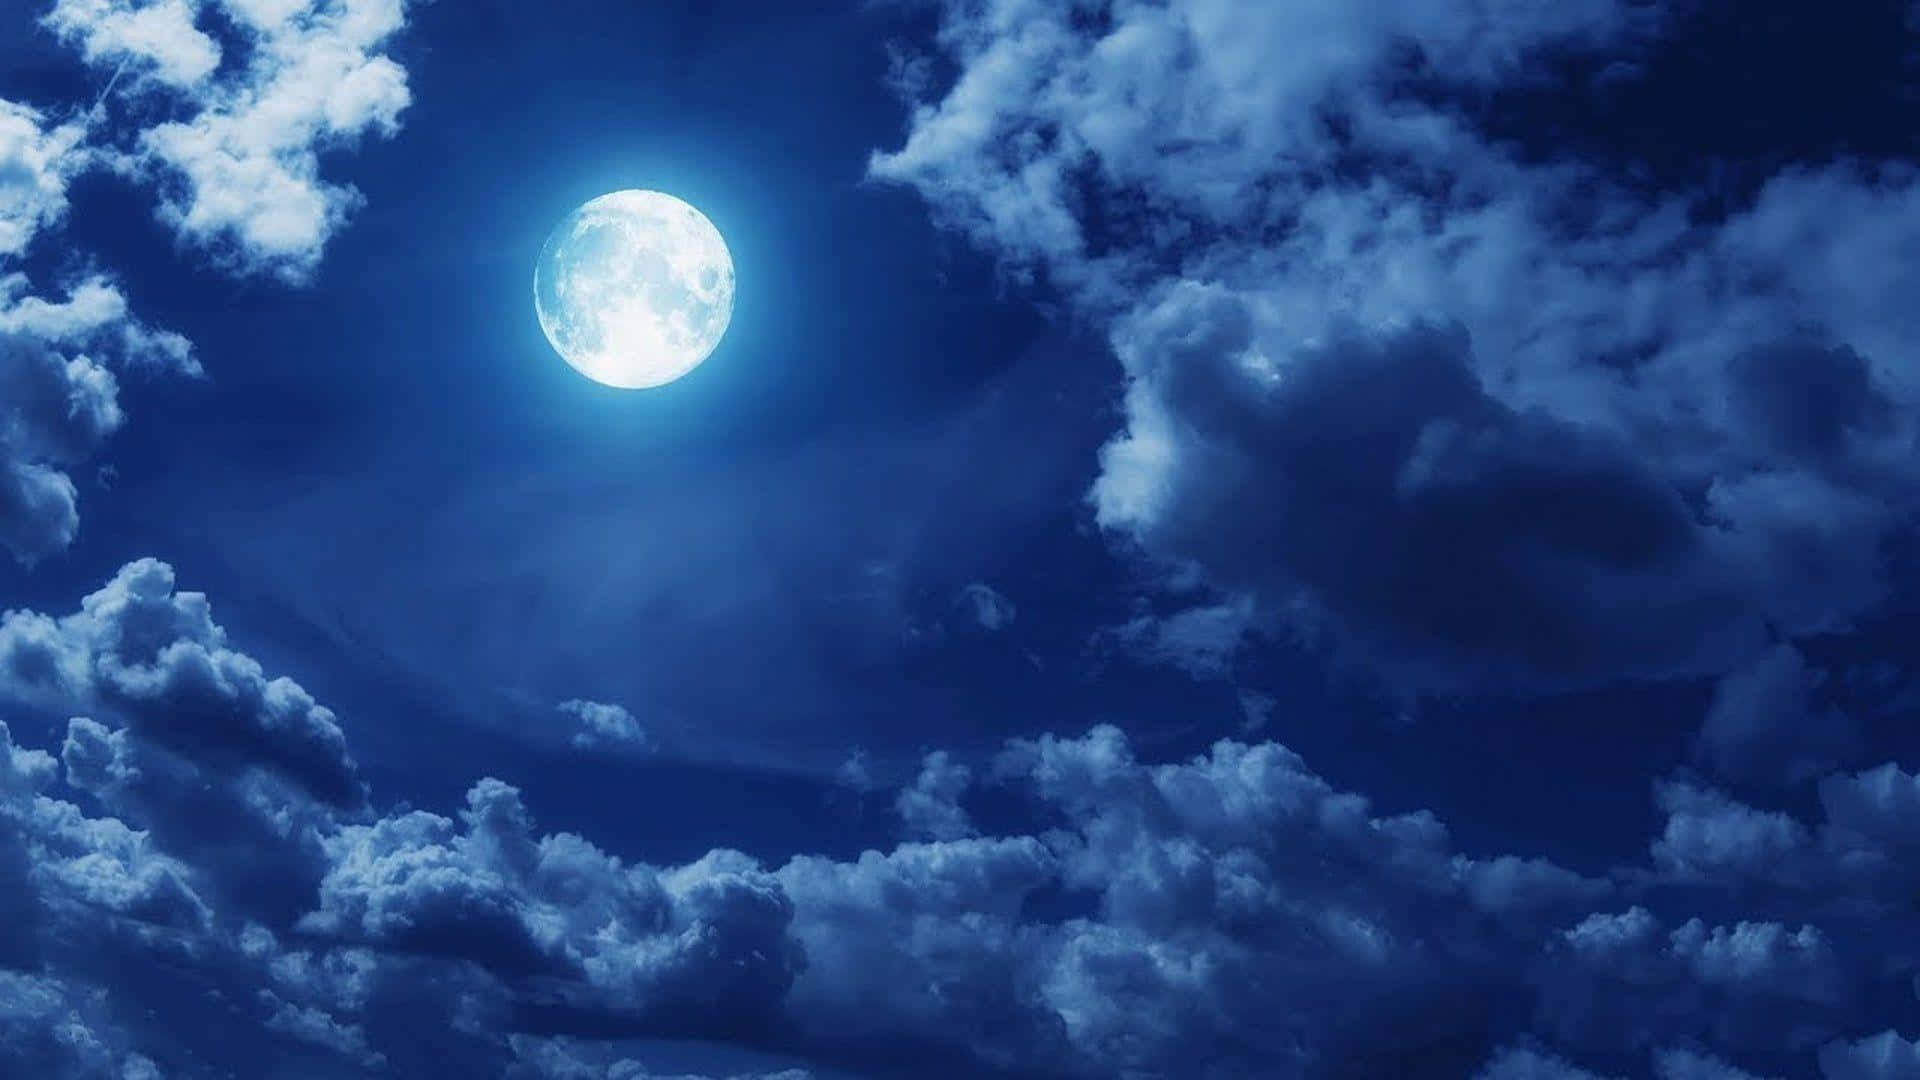 Unaluna Piena Si Vede Tra Le Nuvole Nel Cielo